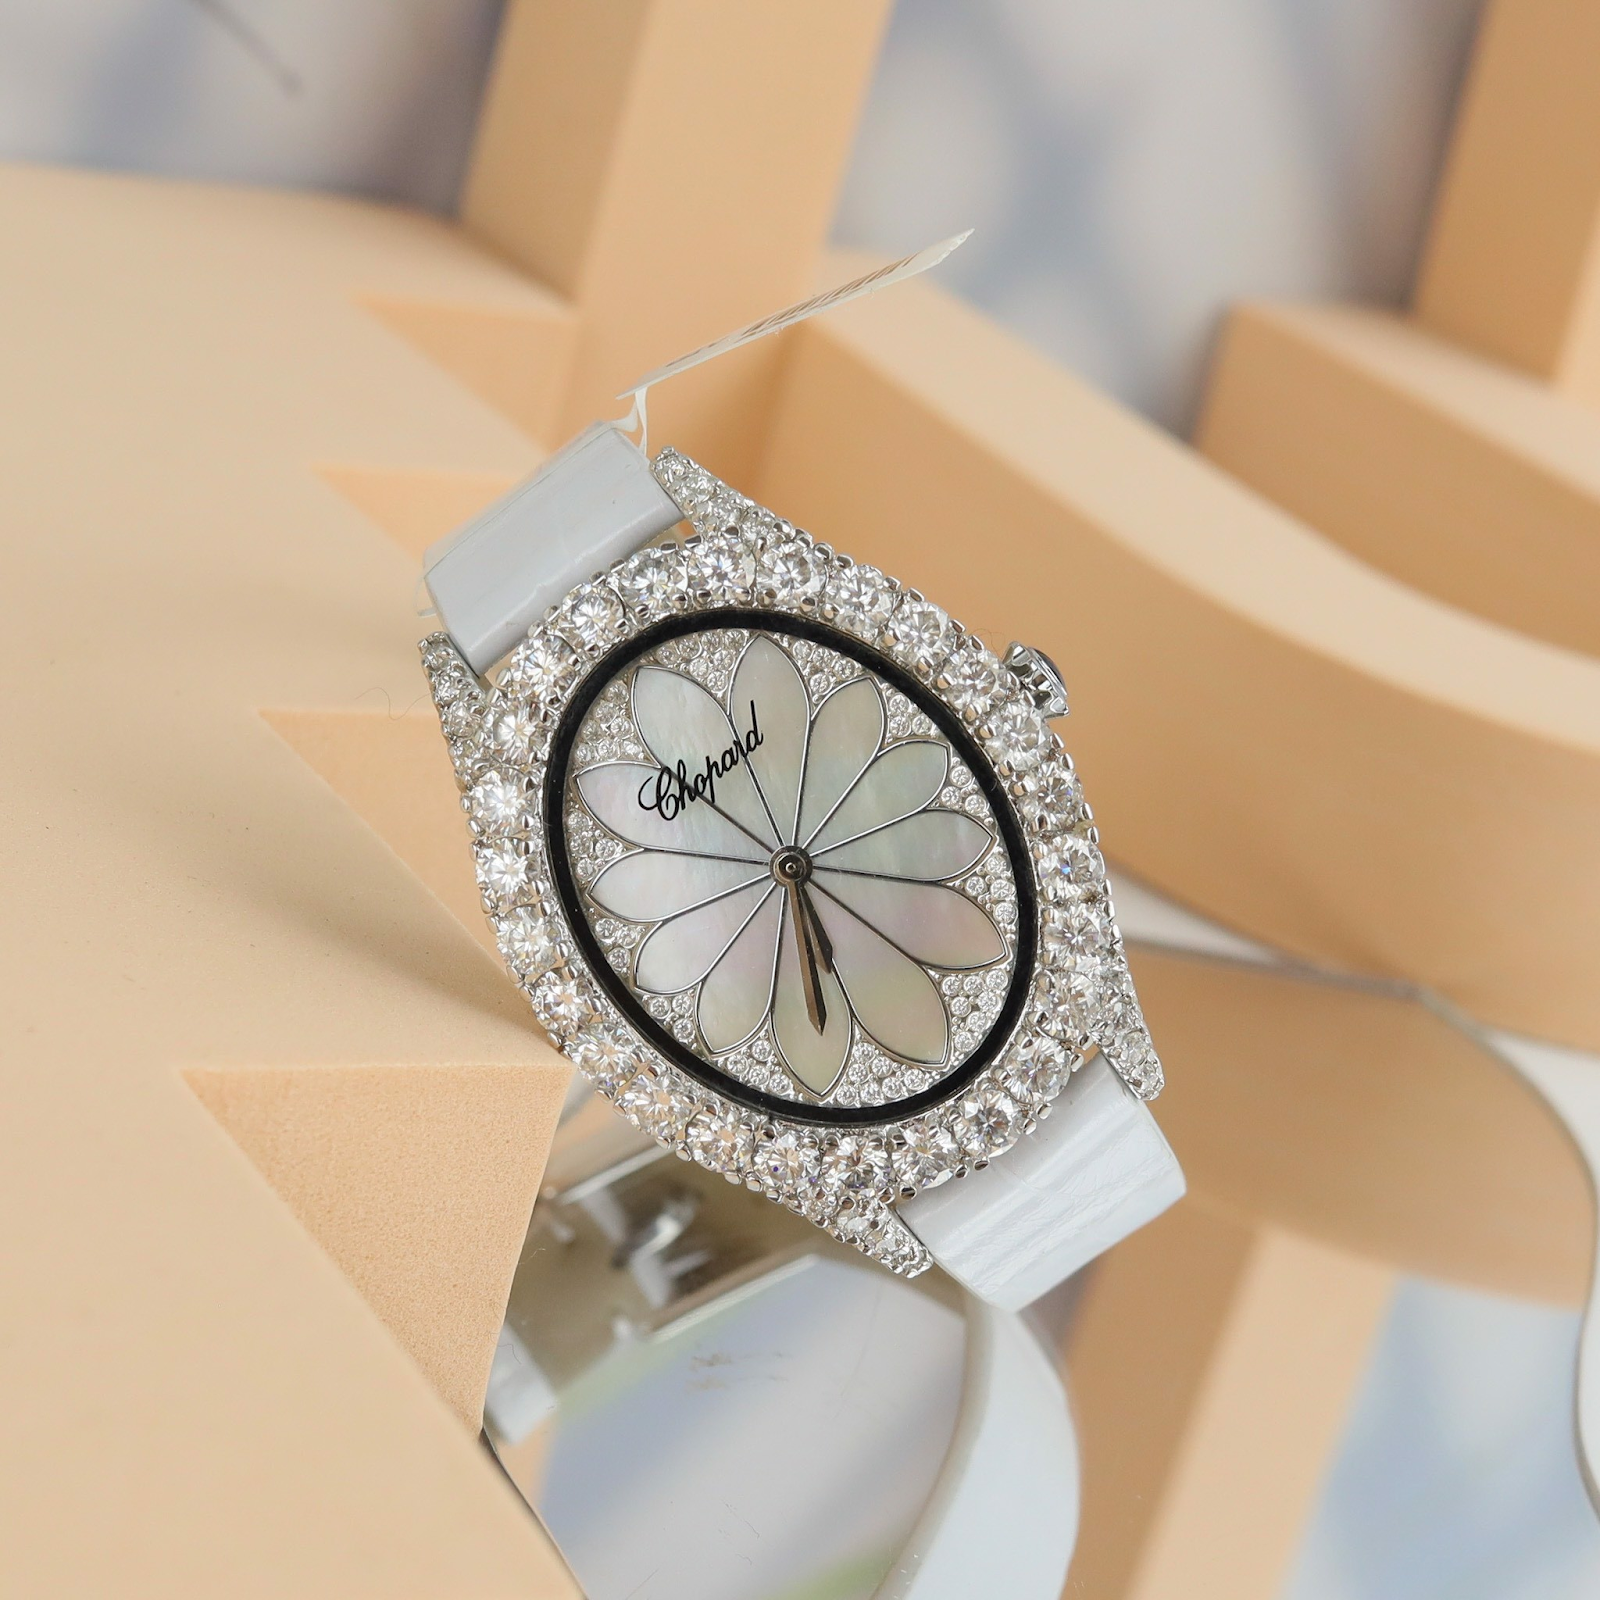 Đồng hồ Chopard nổi tiếng với thiết kế tinh xảo 